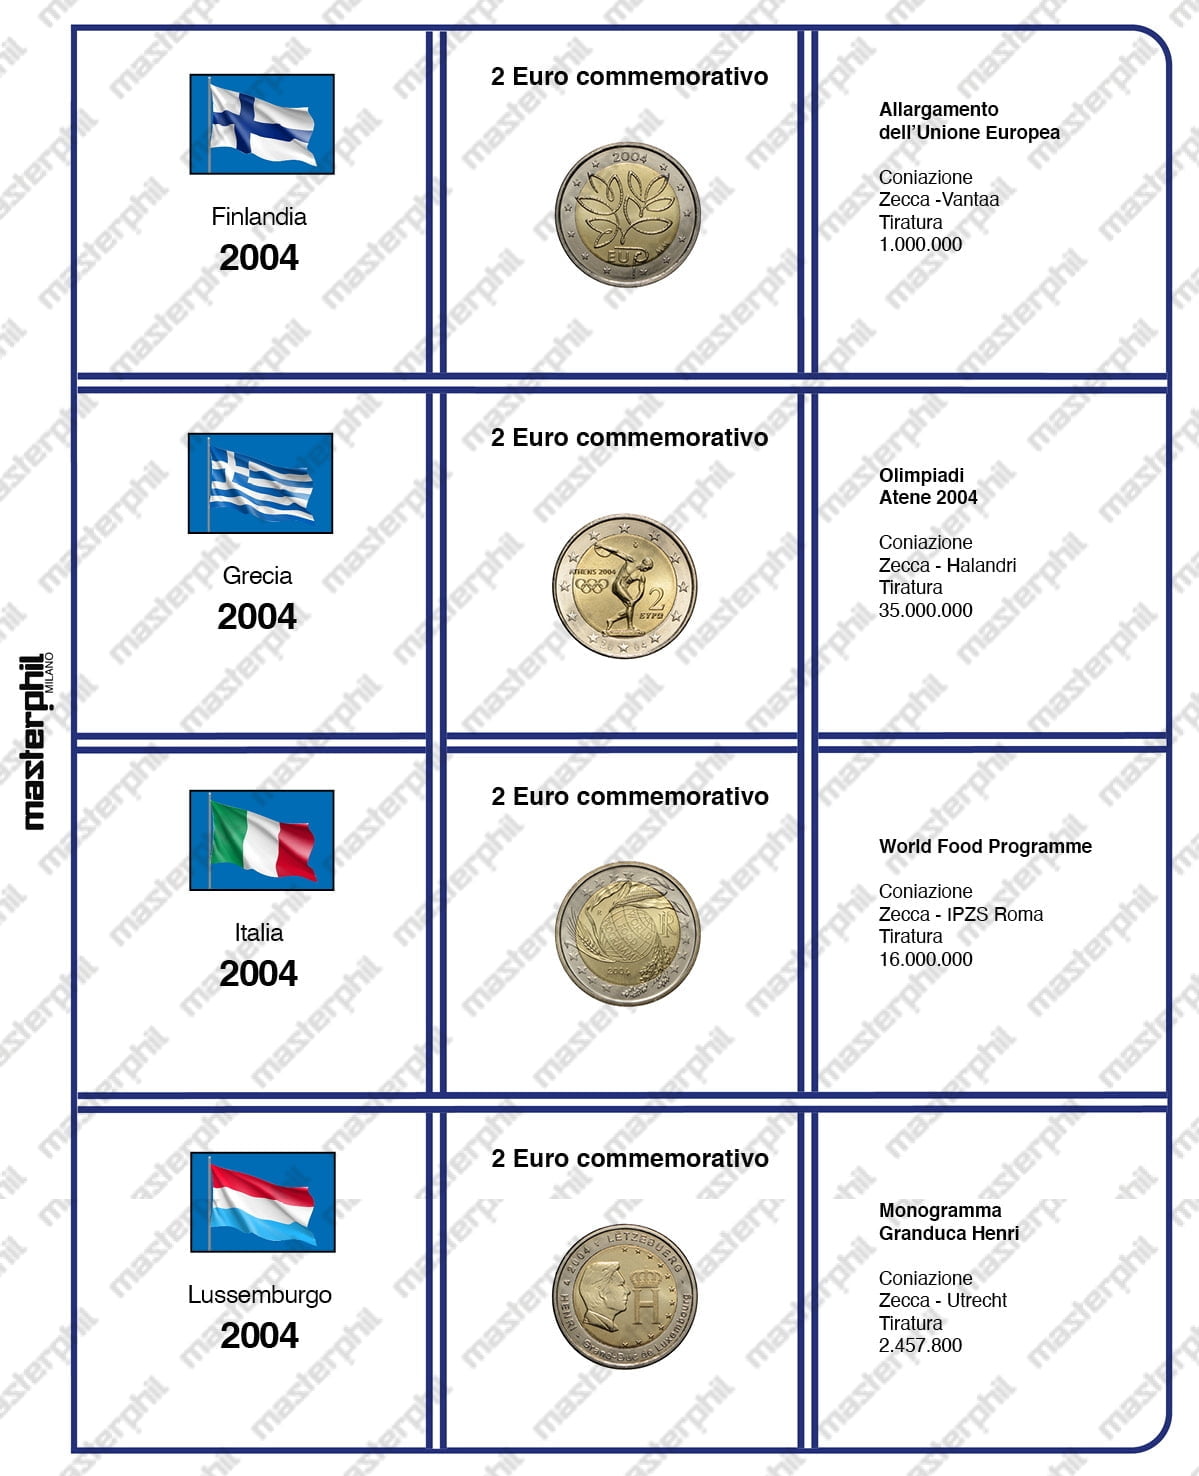 Album raccolta di monete da 2 € comm. con inserti aggiornamenti 2004 2015.